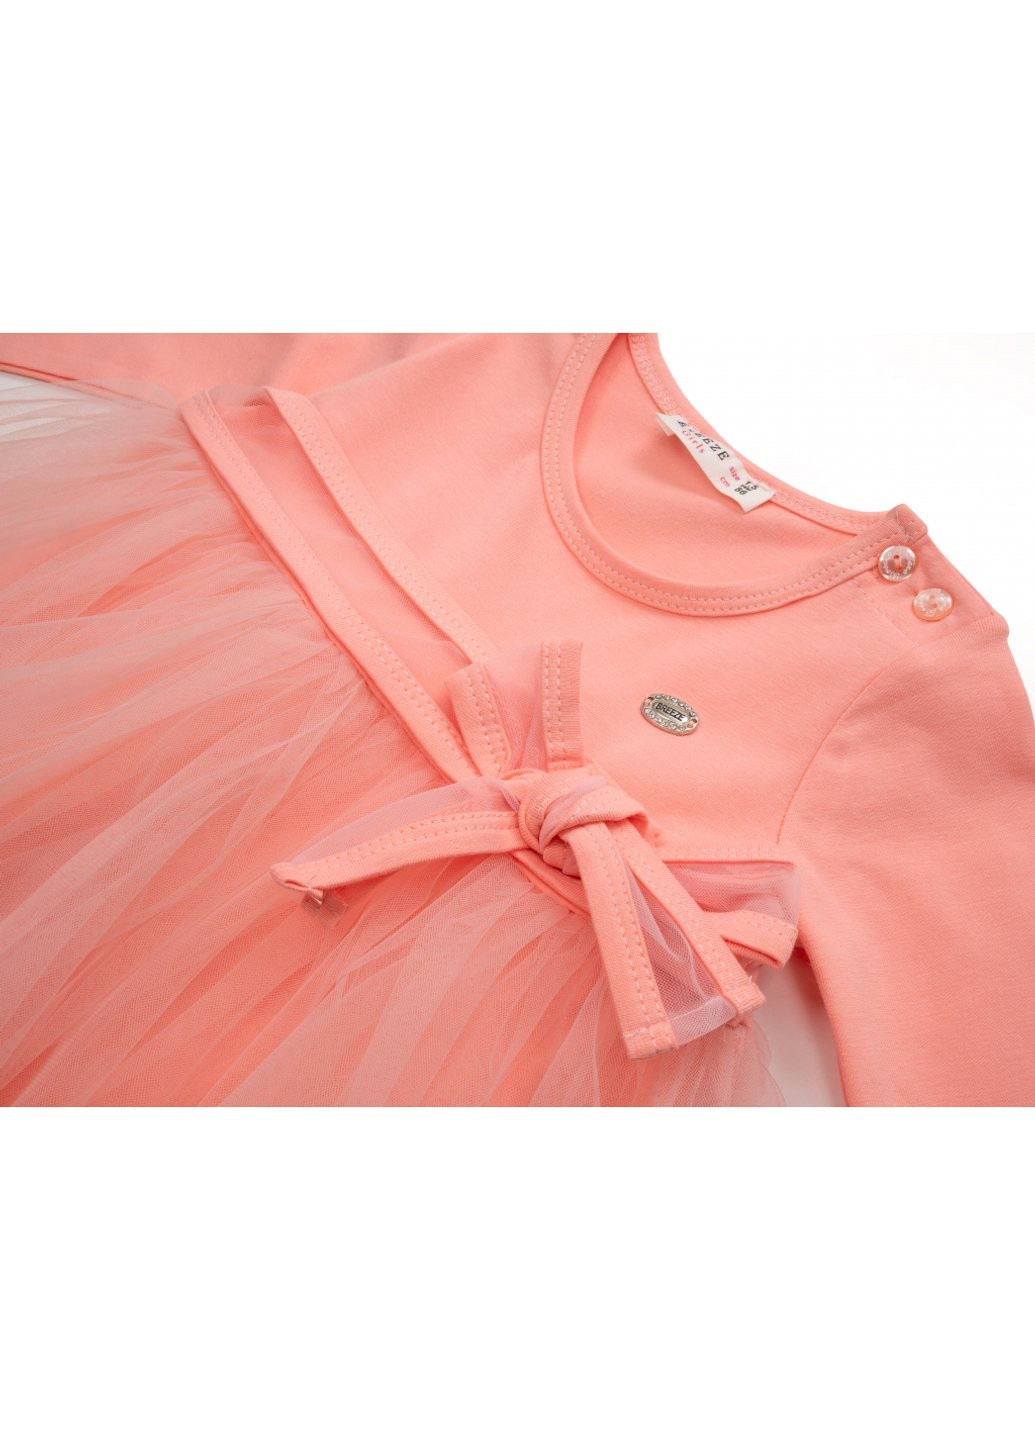 Персиковое платье с фатиновой юбкой (12302-92g-peach) Breeze (257140033)